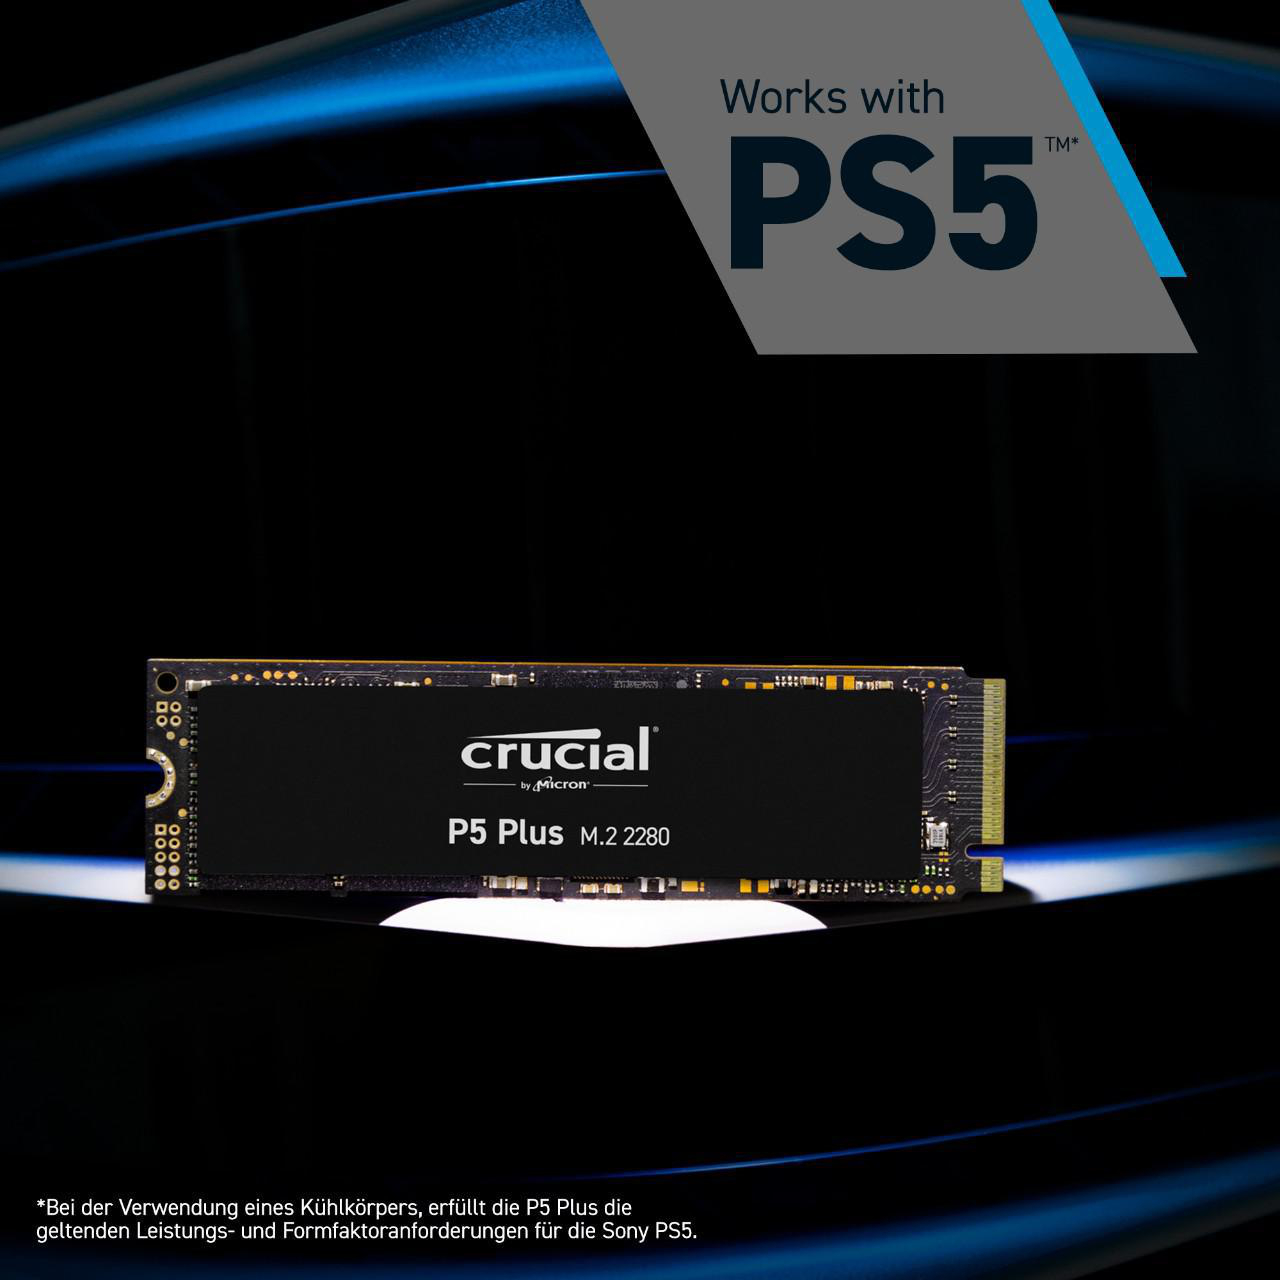 CRUCIAL P5 Plus, Playstation intern SSD NVMe, M.2 SSD kompatibel, 5 GB 500 intern, via